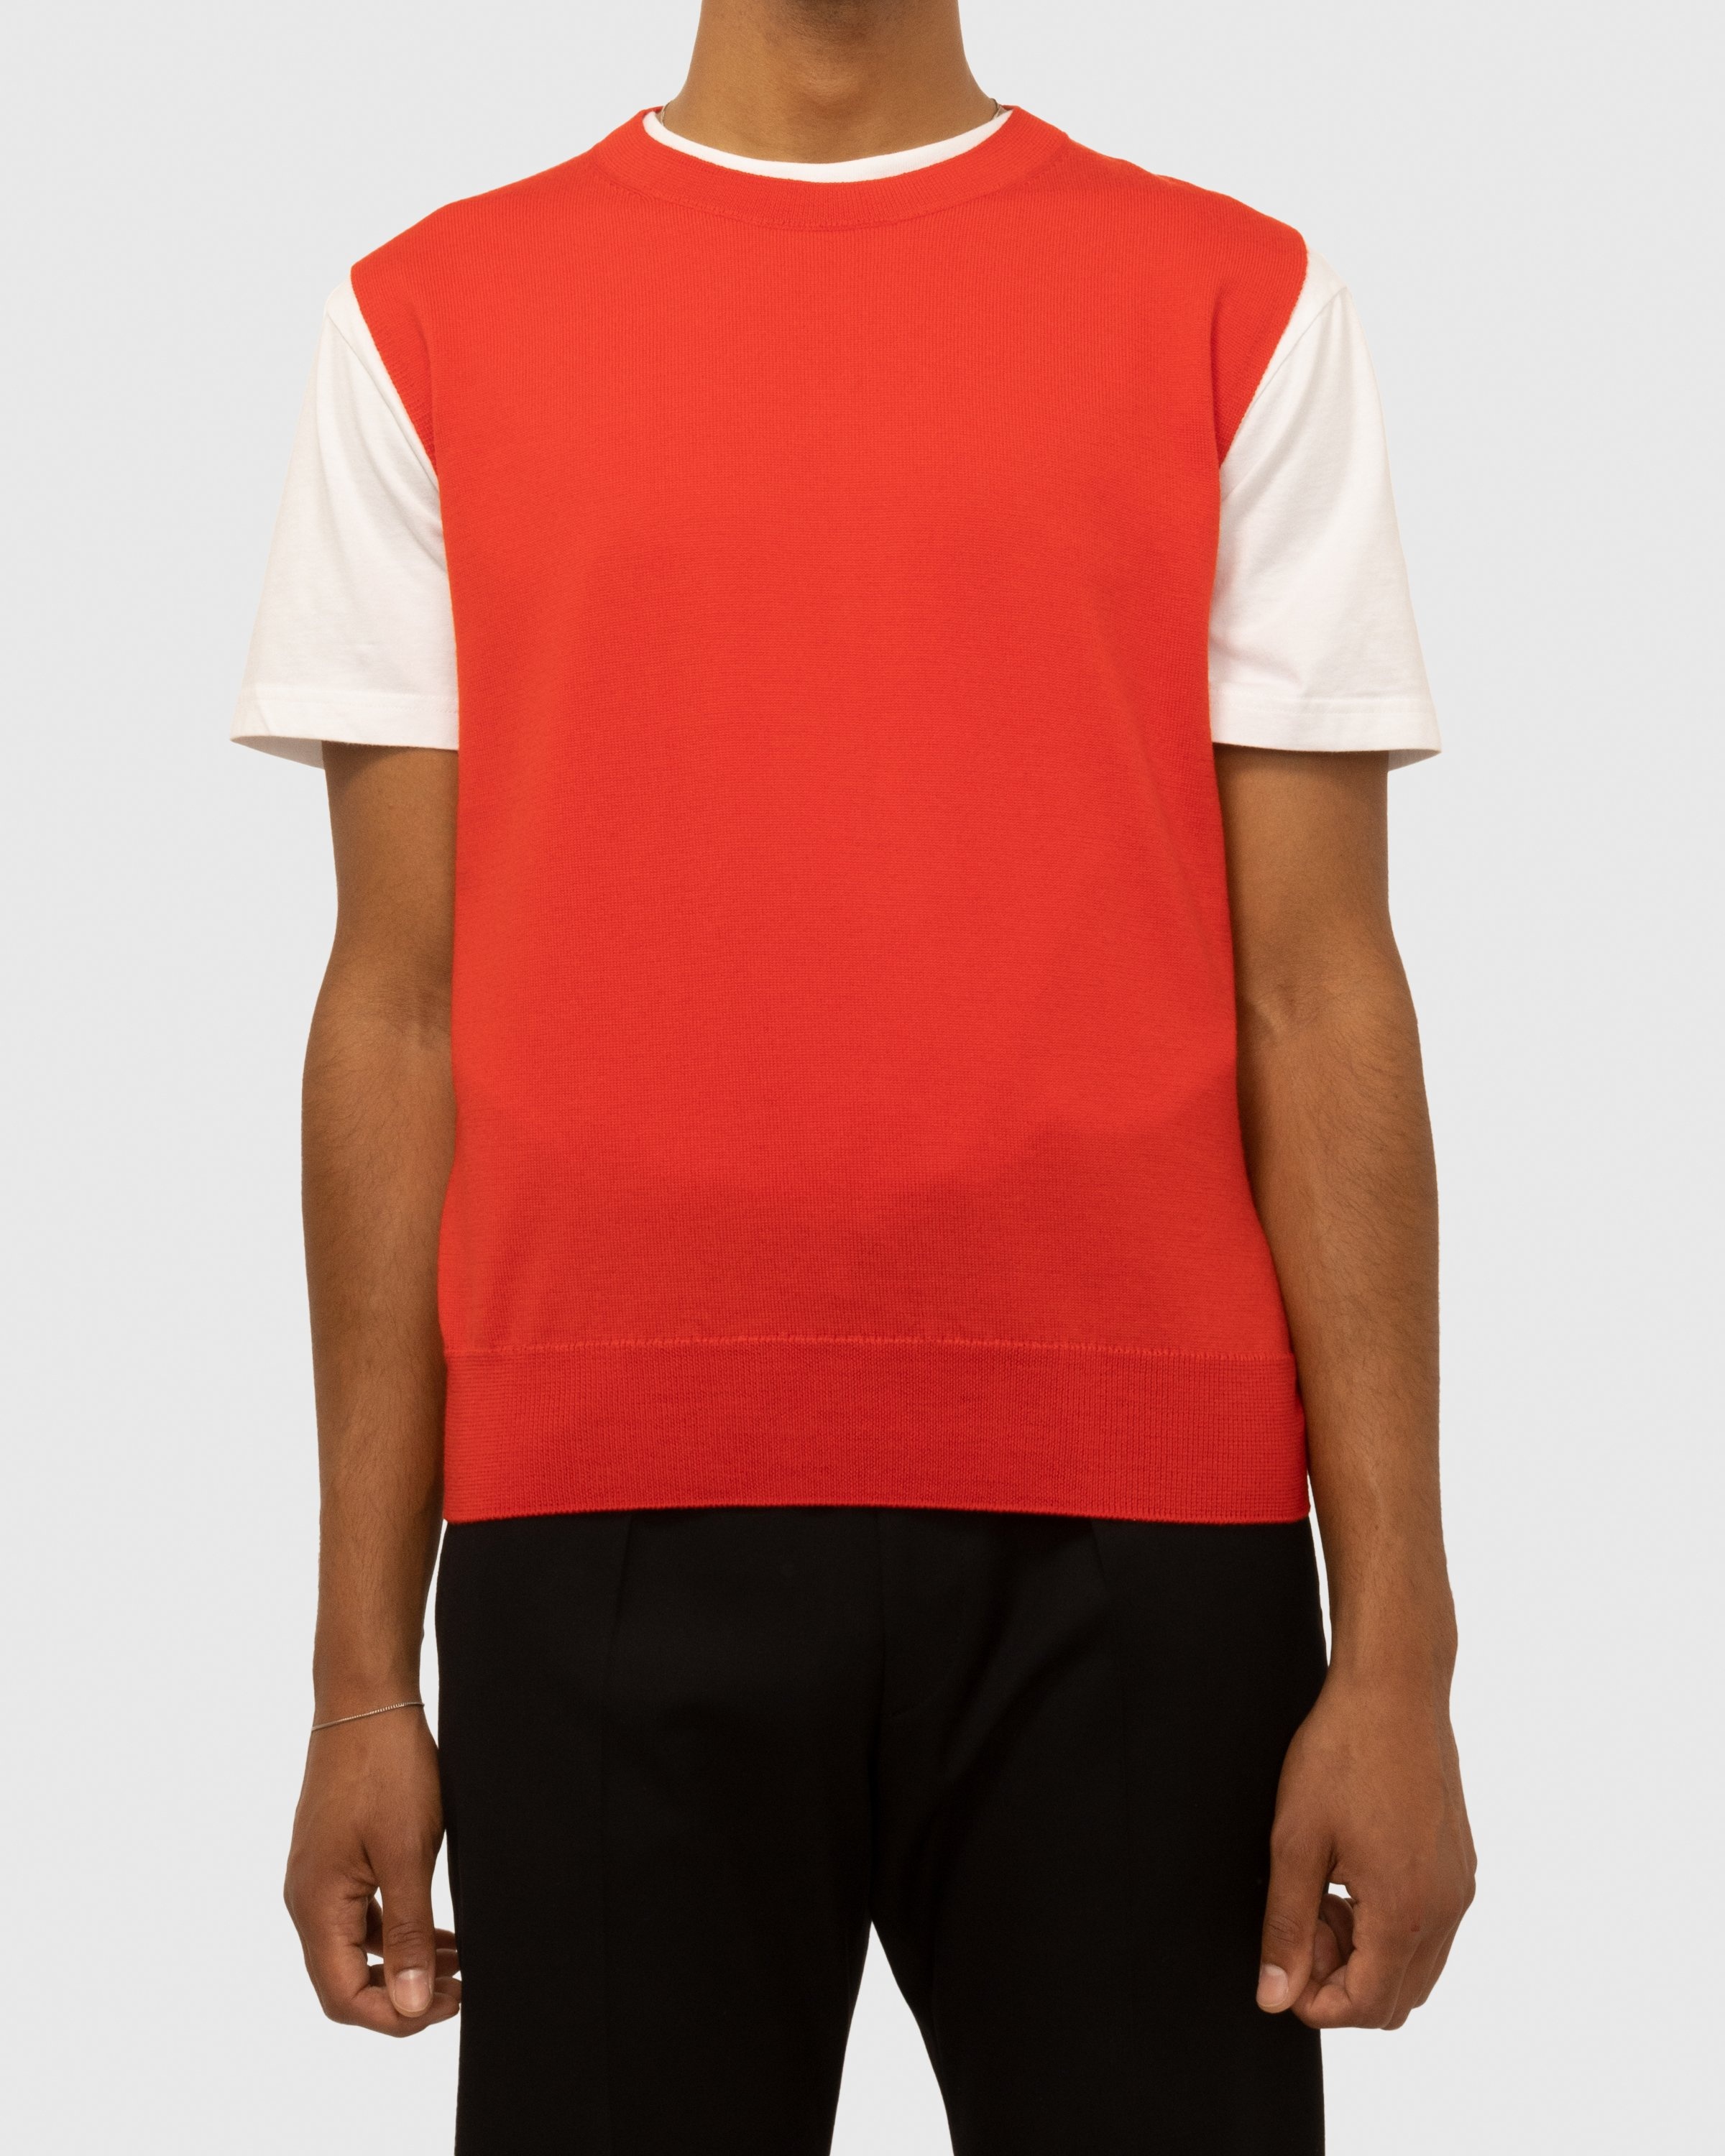 Dries van Noten – Neptune Sweater Vest Red - Knitwear - Red - Image 4